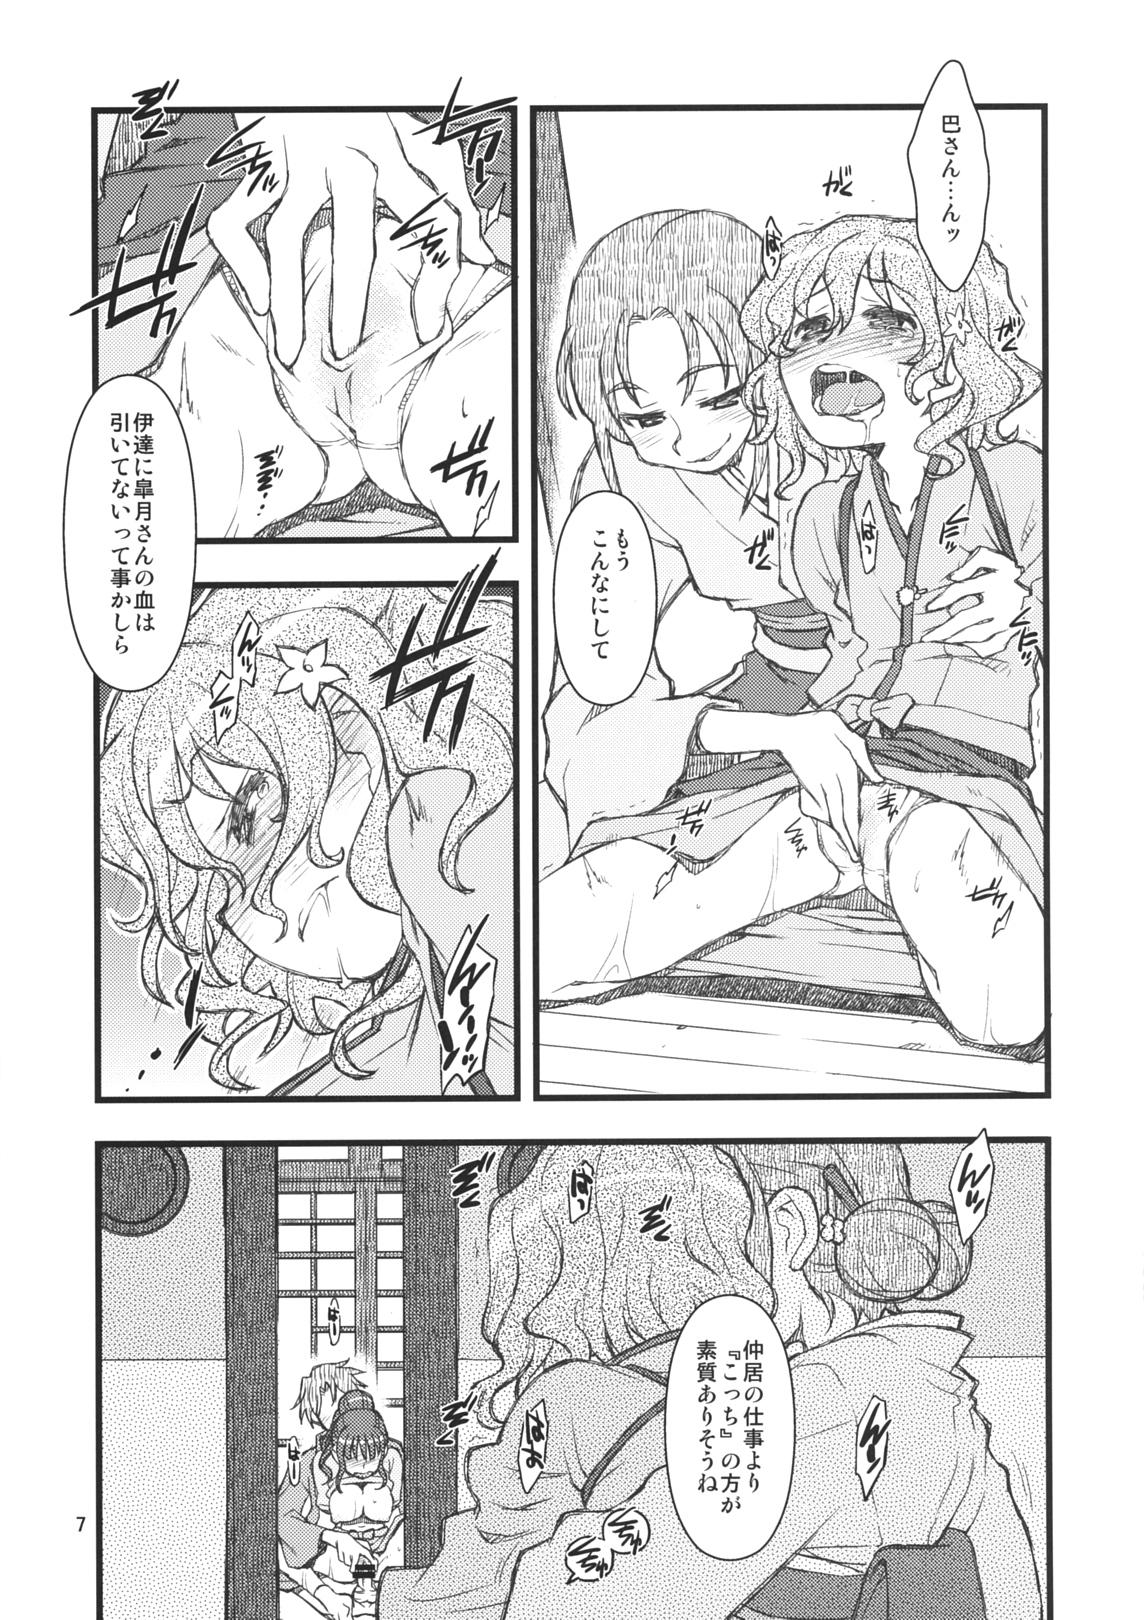 Groping Hanasake! GIRLS - Hanasaku iroha Bikini - Page 6